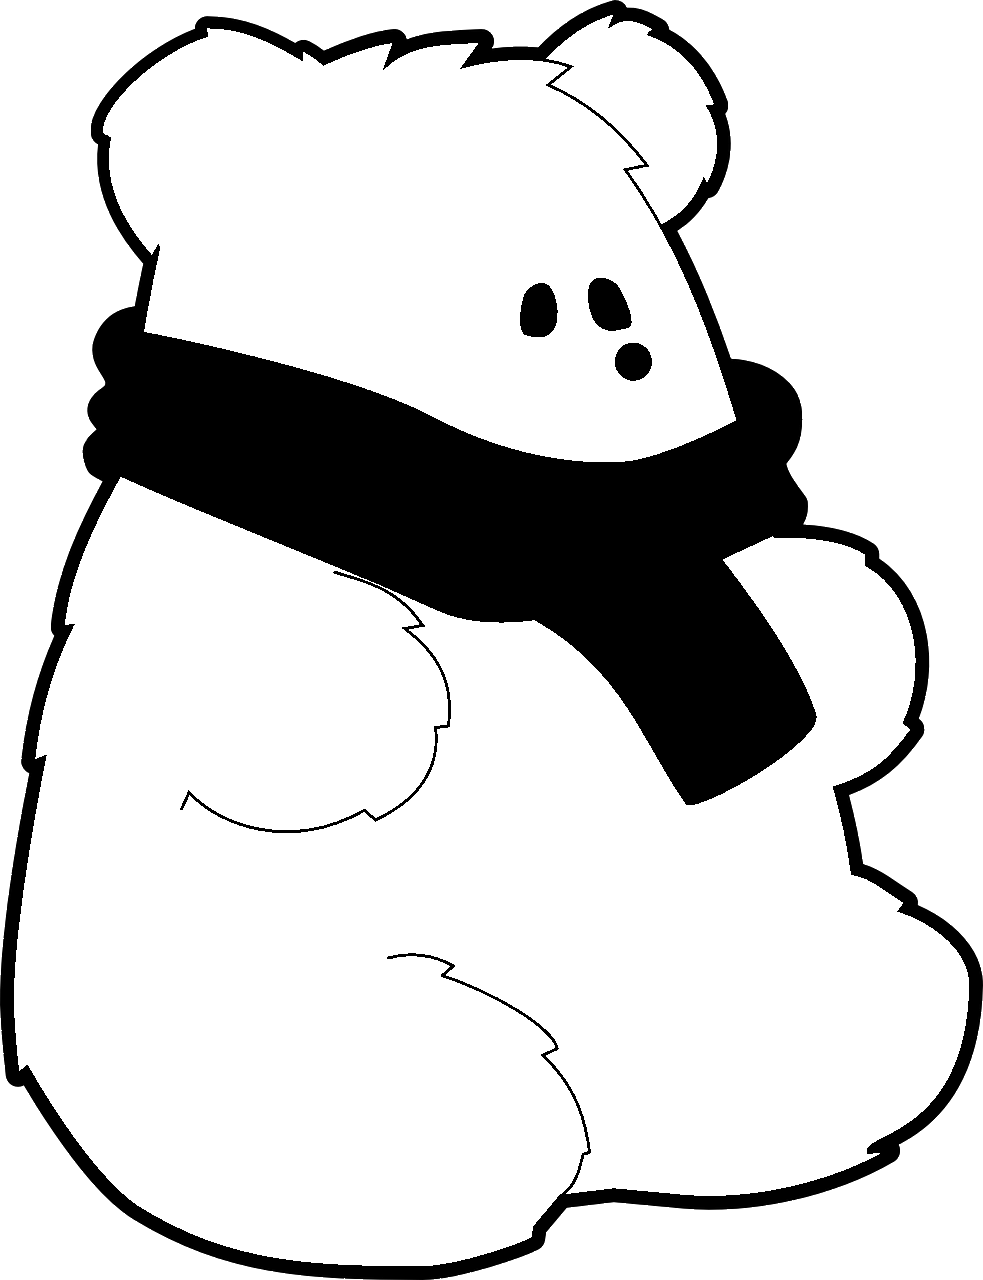 Disegno da colorare di orso polare con sciarpa